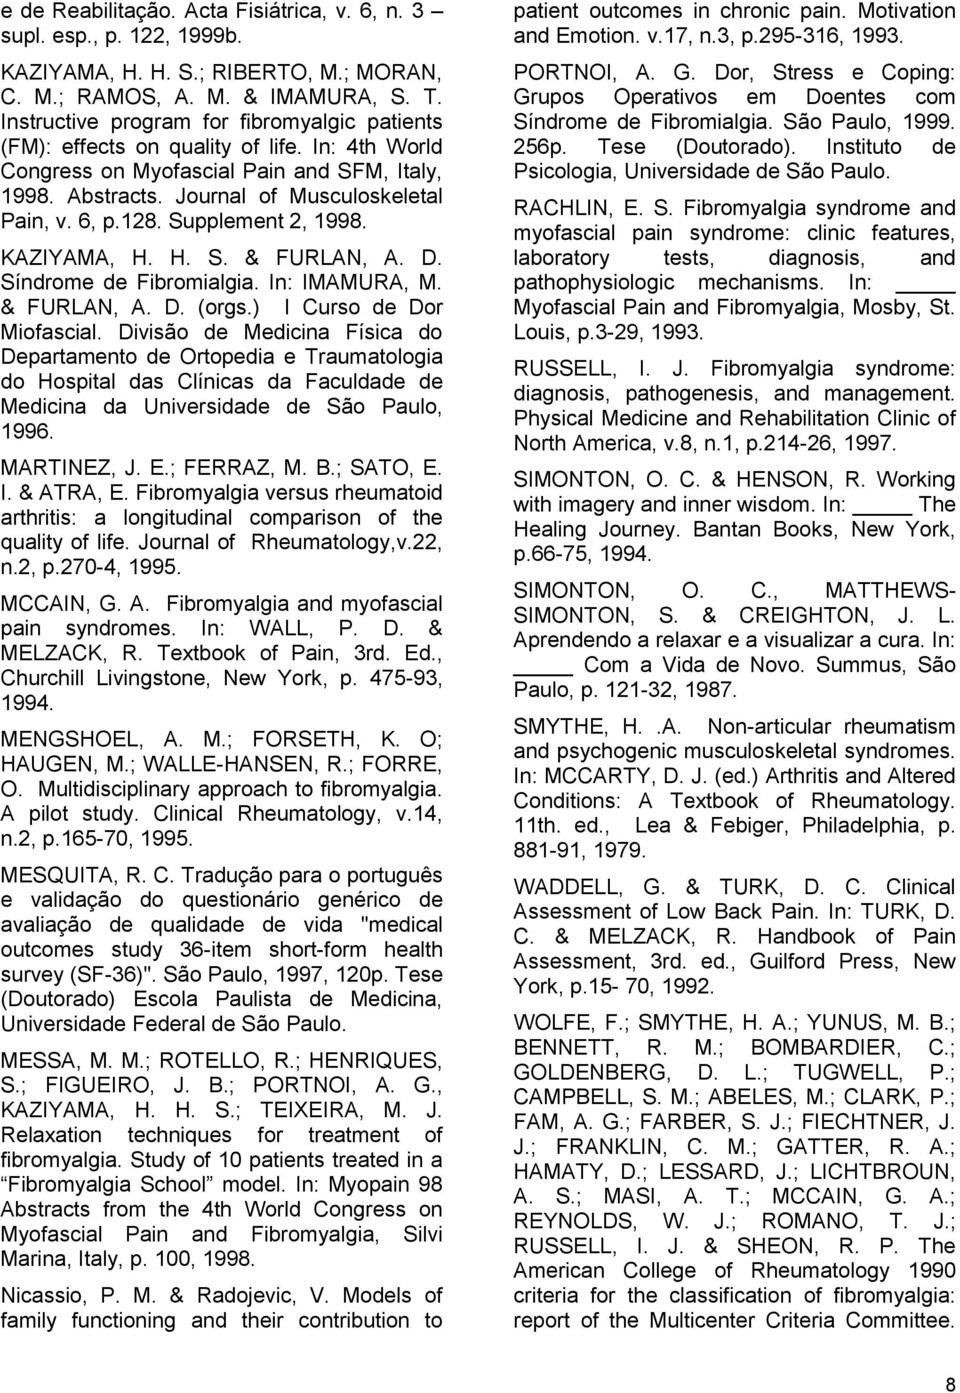 Supplement 2, 1998. KAZIYAMA, H. H. S. & FURLAN, A. D. Síndrome de Fibromialgia. In: IMAMURA, M. & FURLAN, A. D. (orgs.) I Curso de Dor Miofascial.